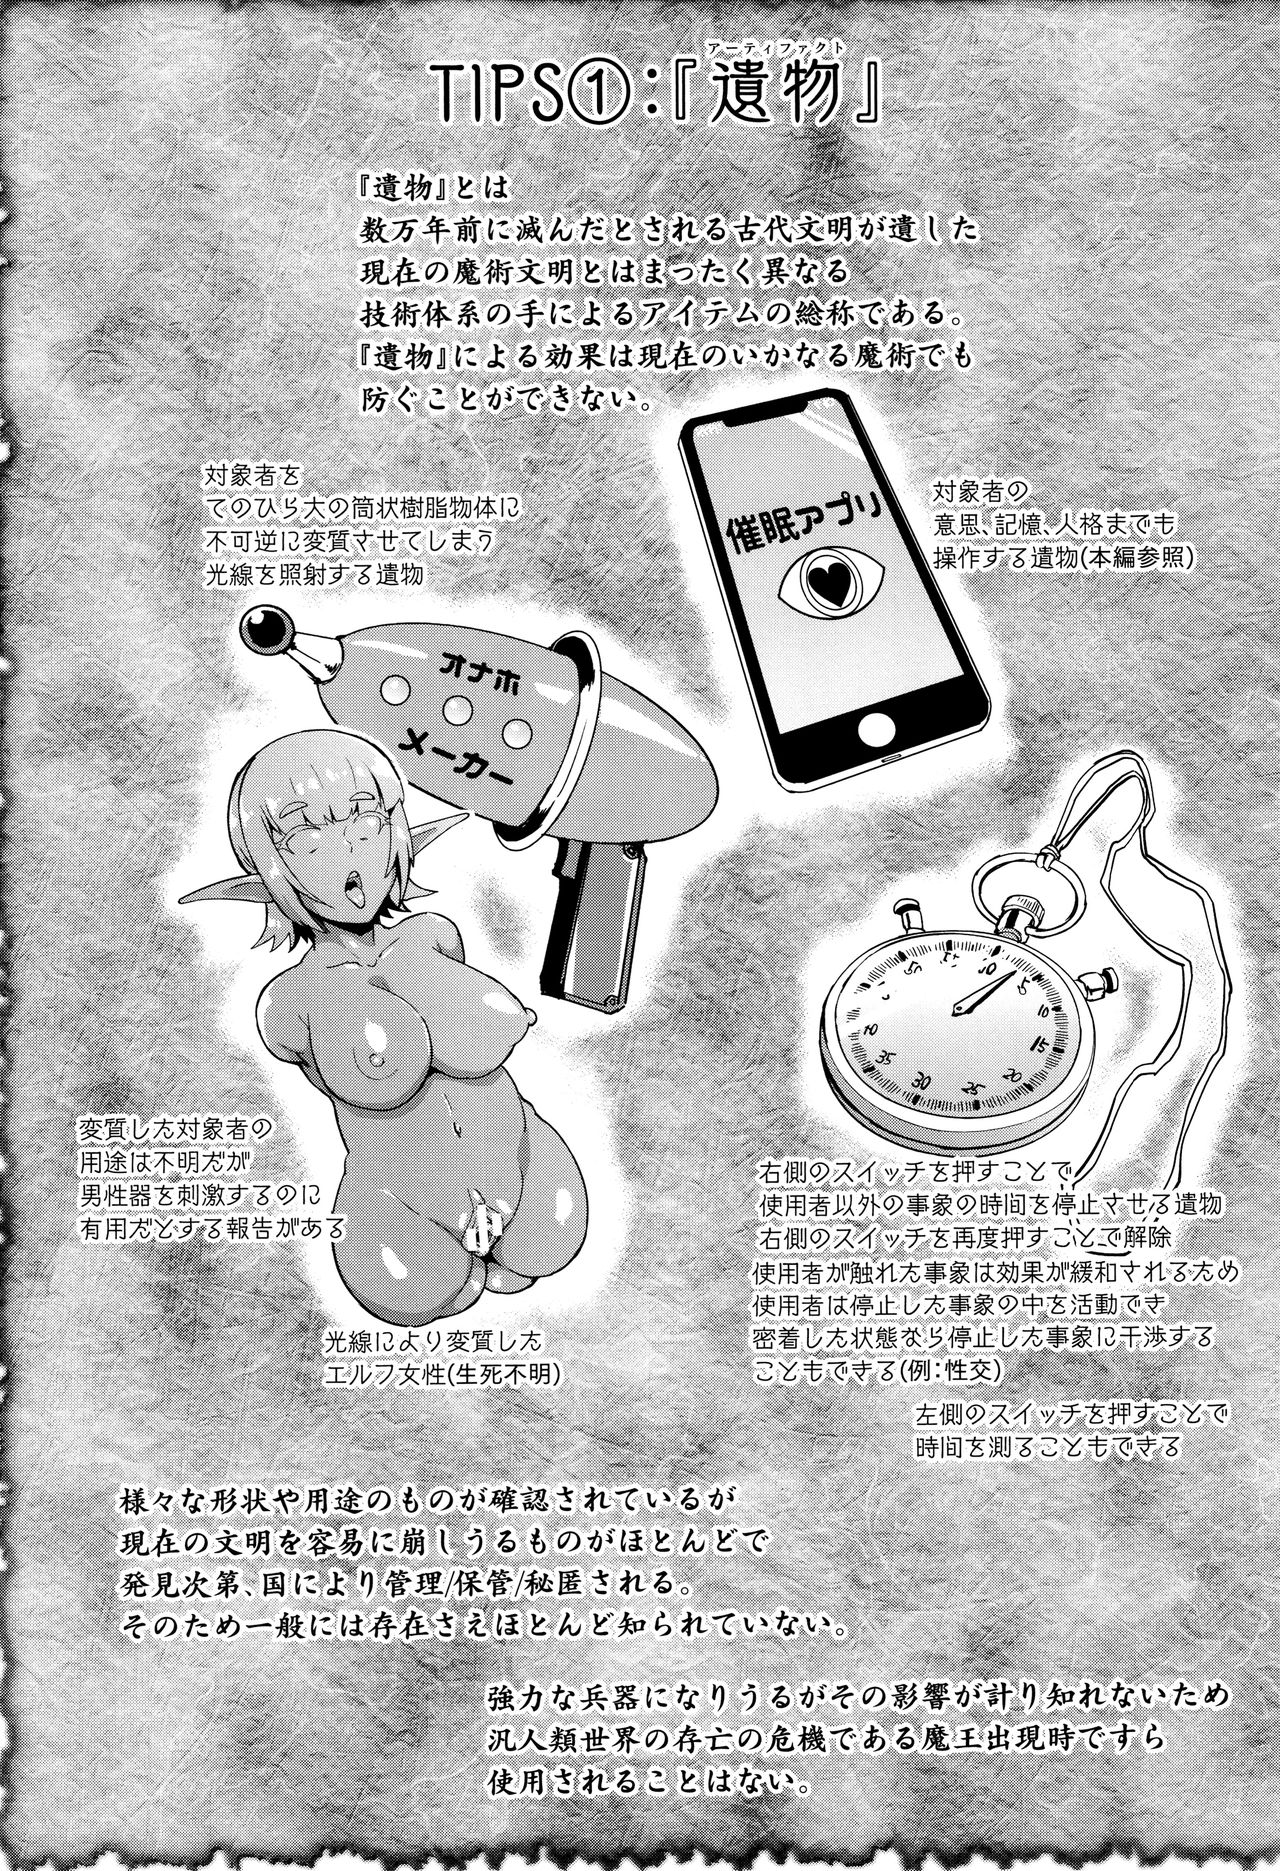 [煌野一人] ヒプノアプリ×タイムストップファンタジア + 4Pリーフレット